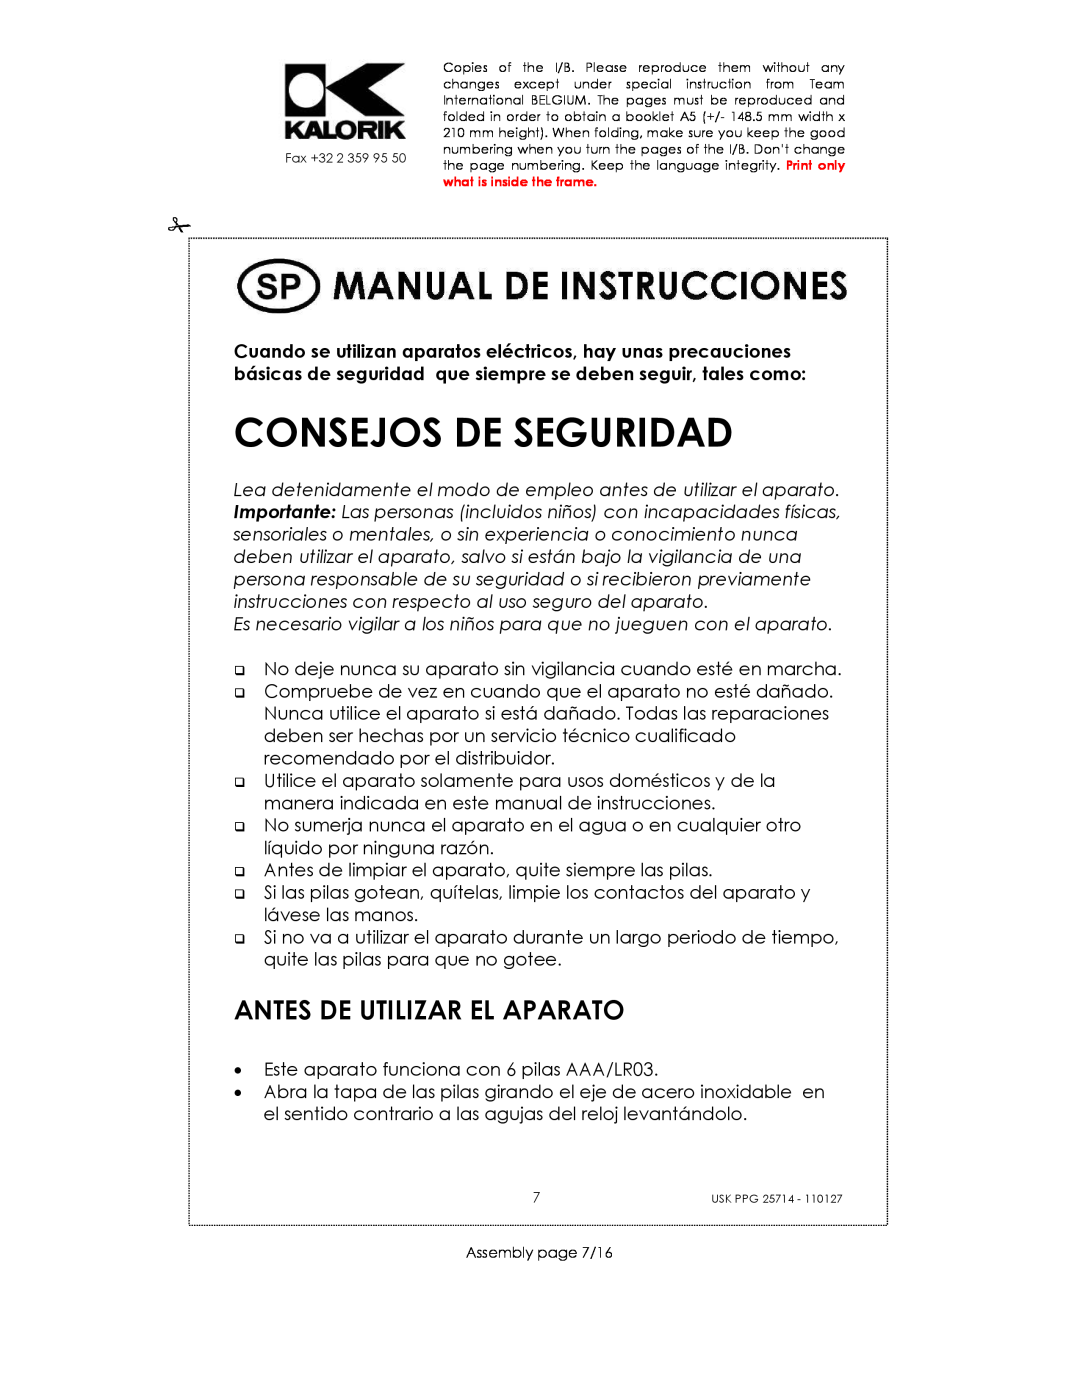 Kalorik USK PPG 25714 manual Consejos De Seguridad, Antes De Utilizar El Aparato 